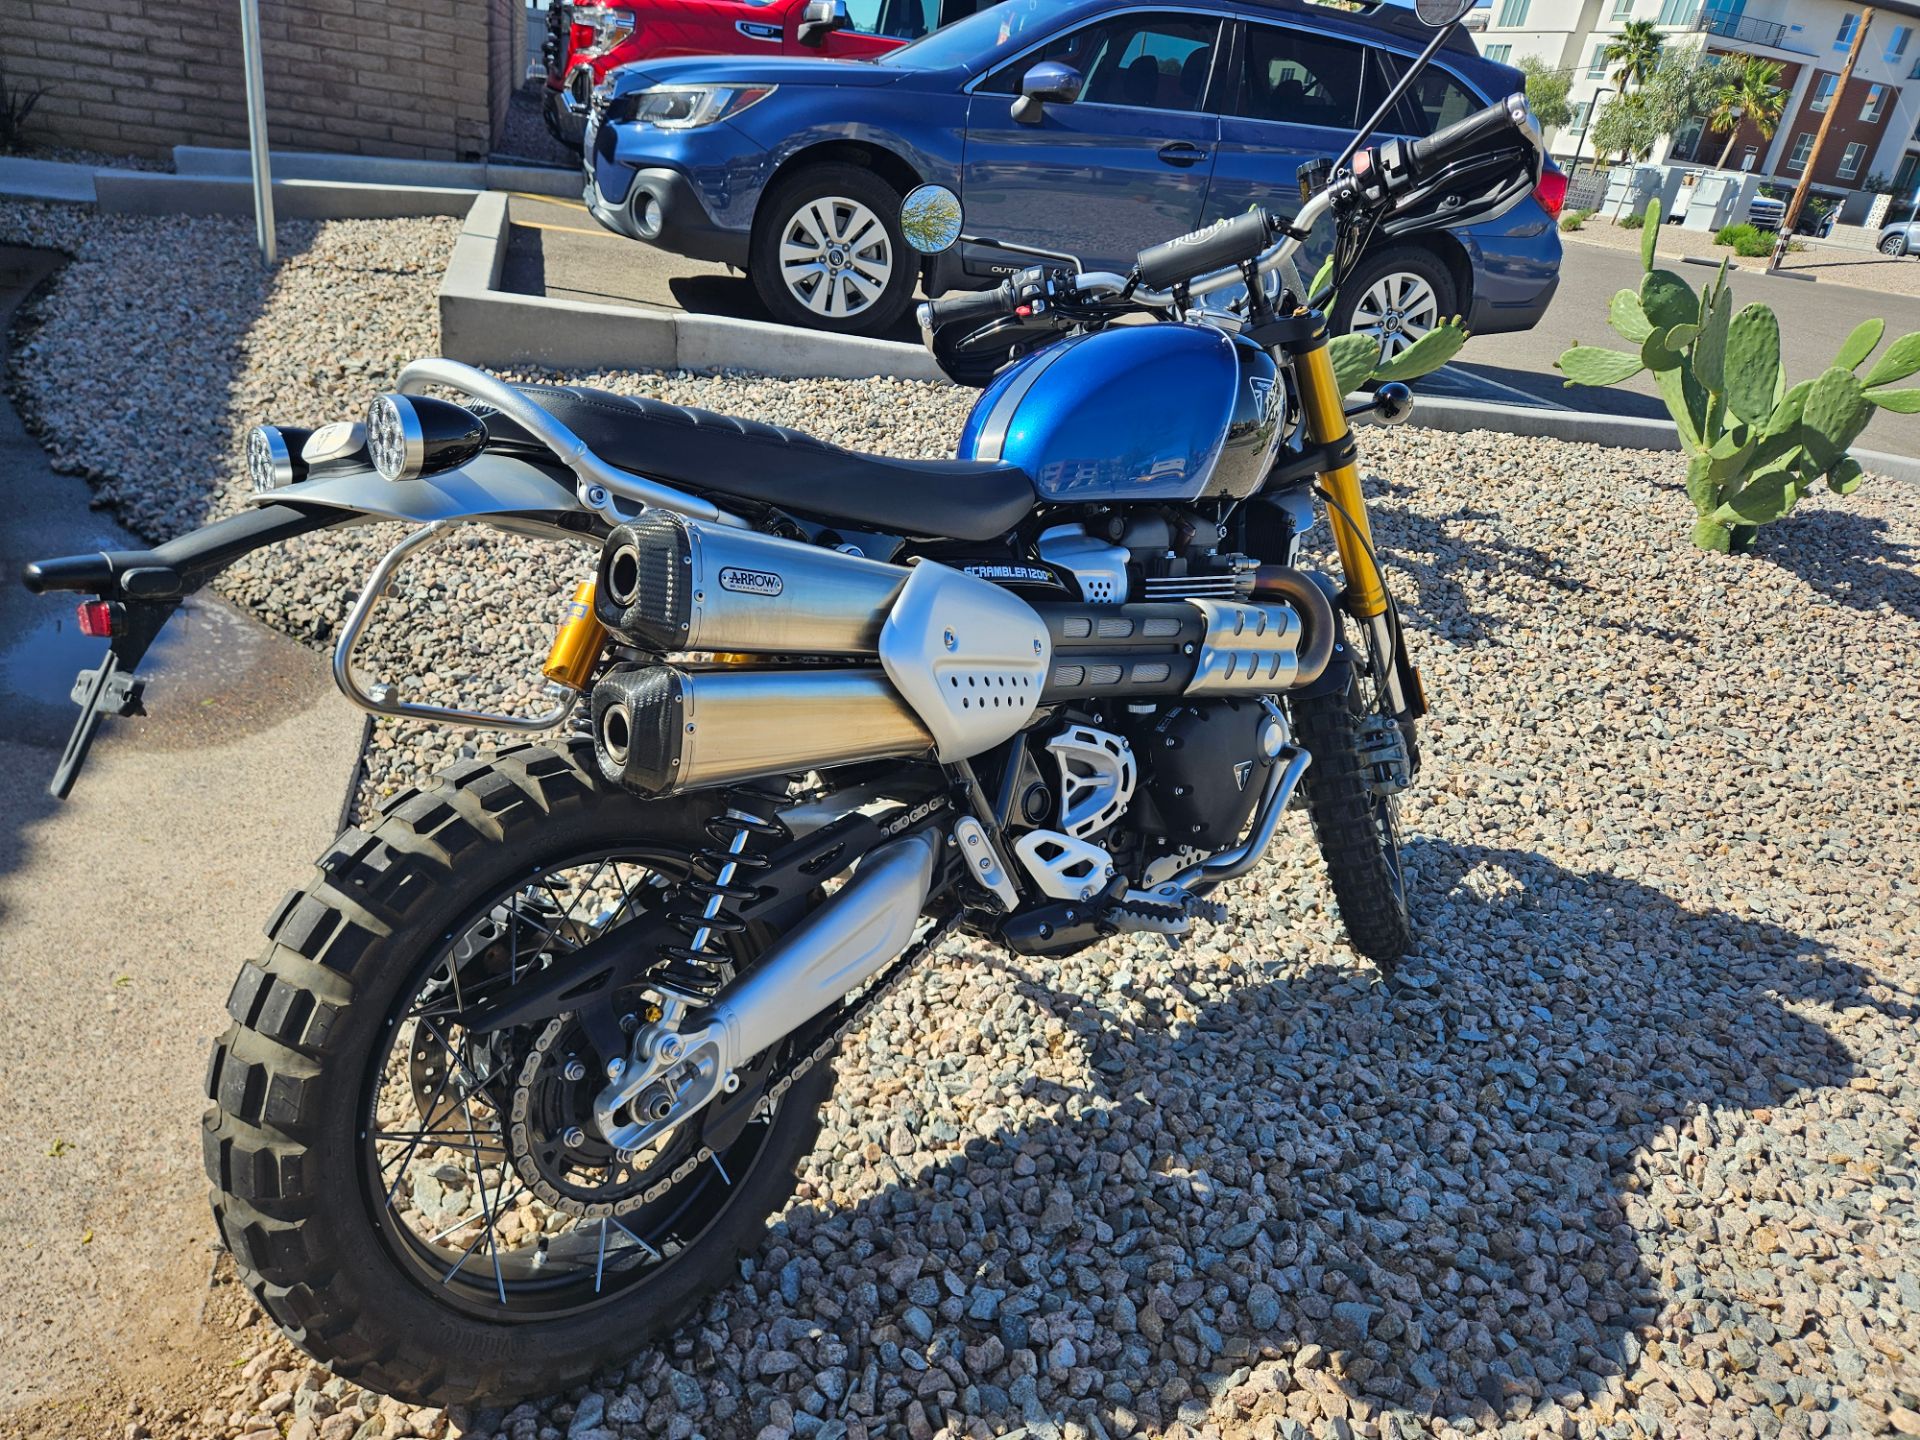 2019 Triumph Scrambler 1200 XE - Showcase in Scottsdale, Arizona - Photo 6